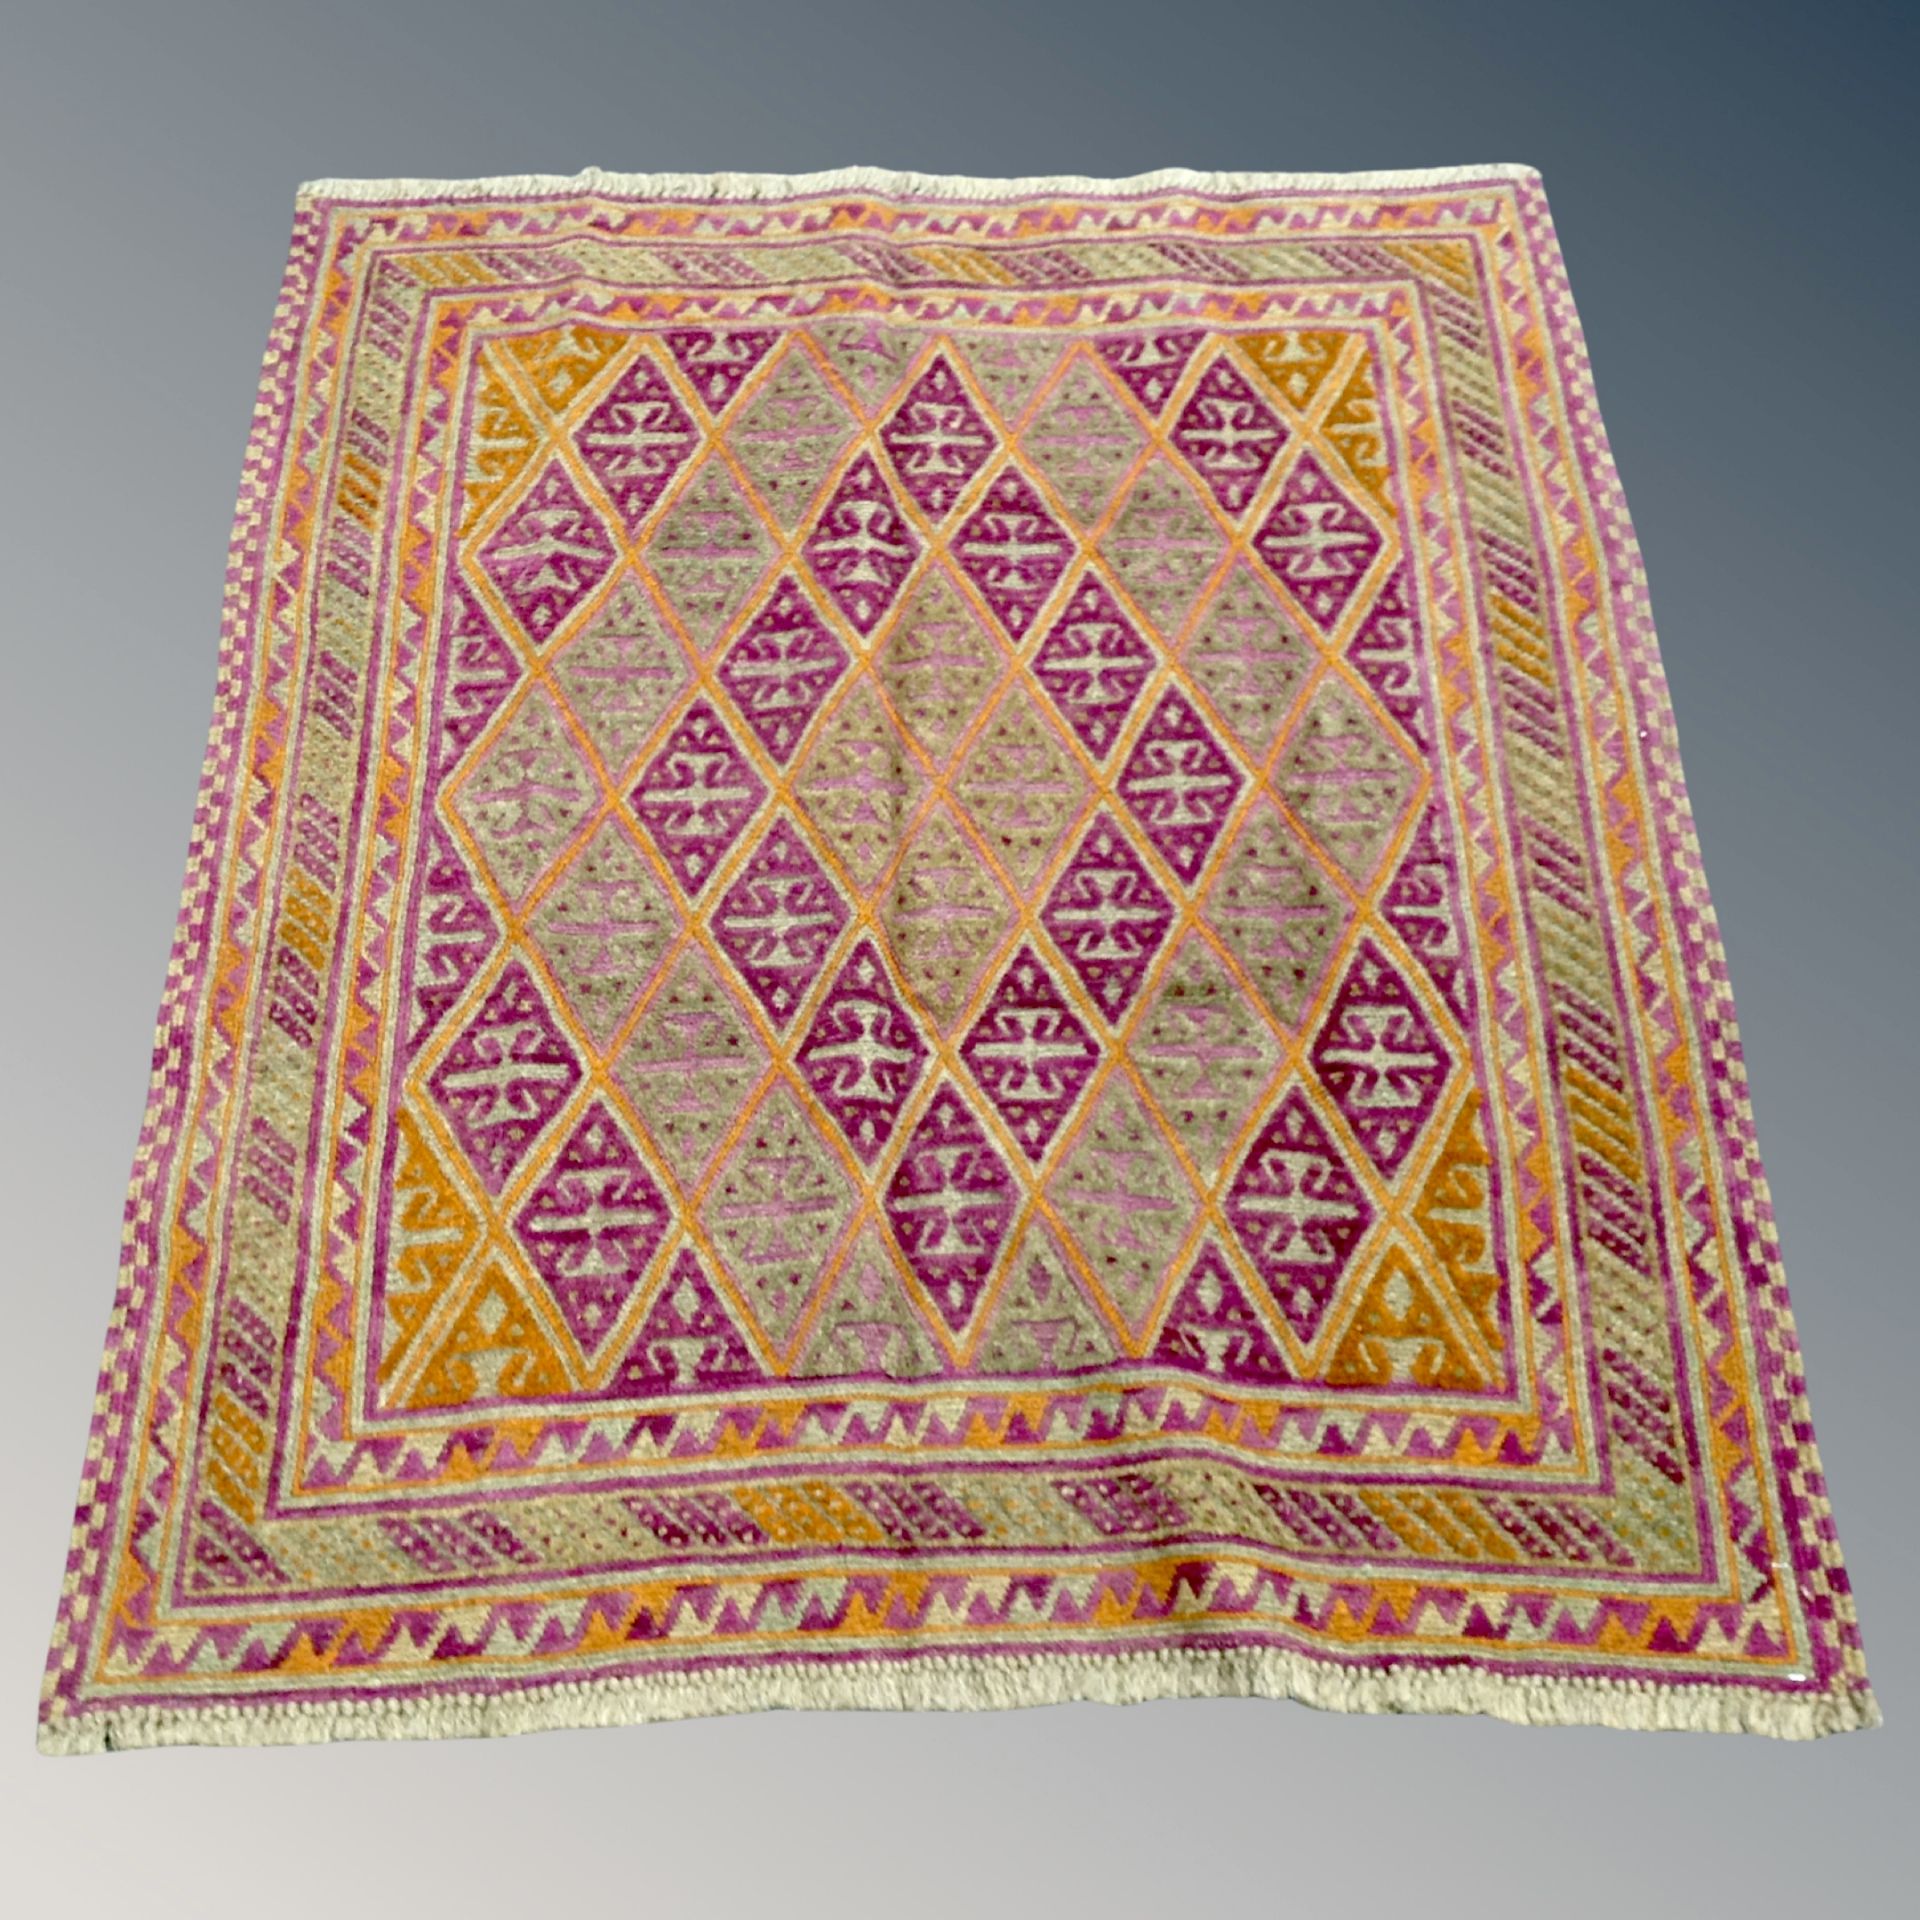 A Meshwani Gazak rug 128 cm x 110 cm